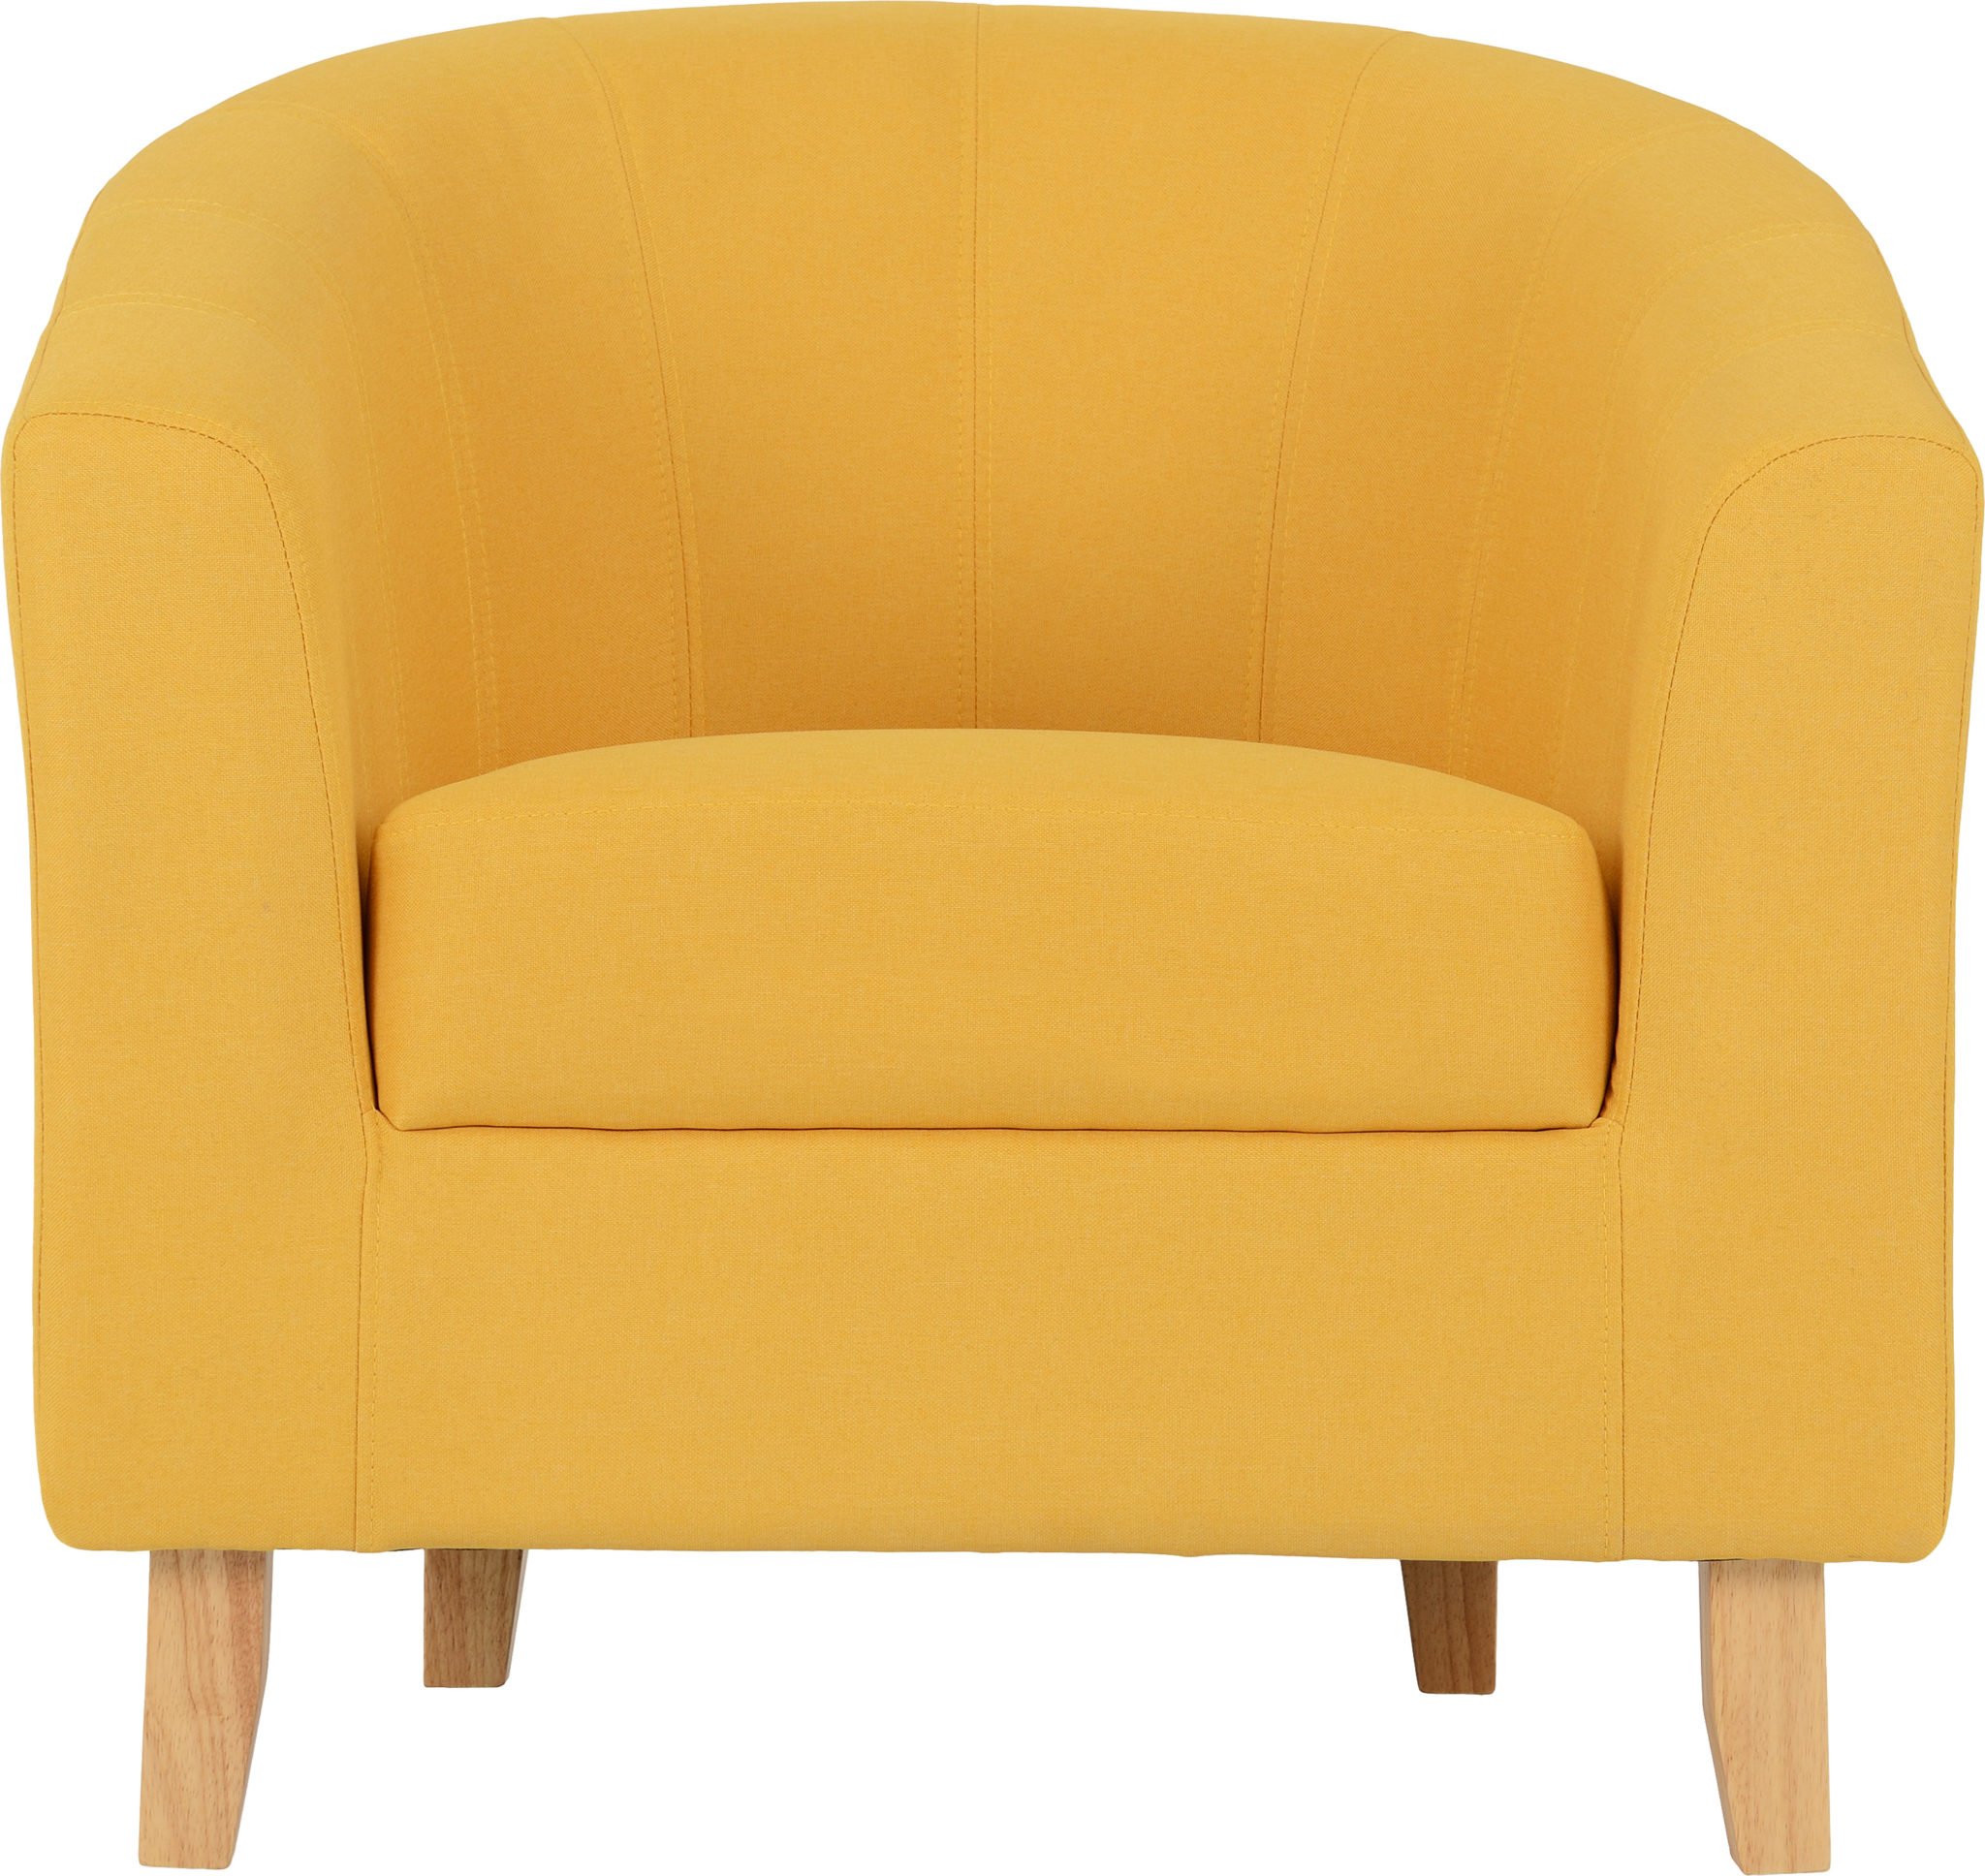 300-309-026 - Tempo Tub Chair - Mustard Fabric - Seconique